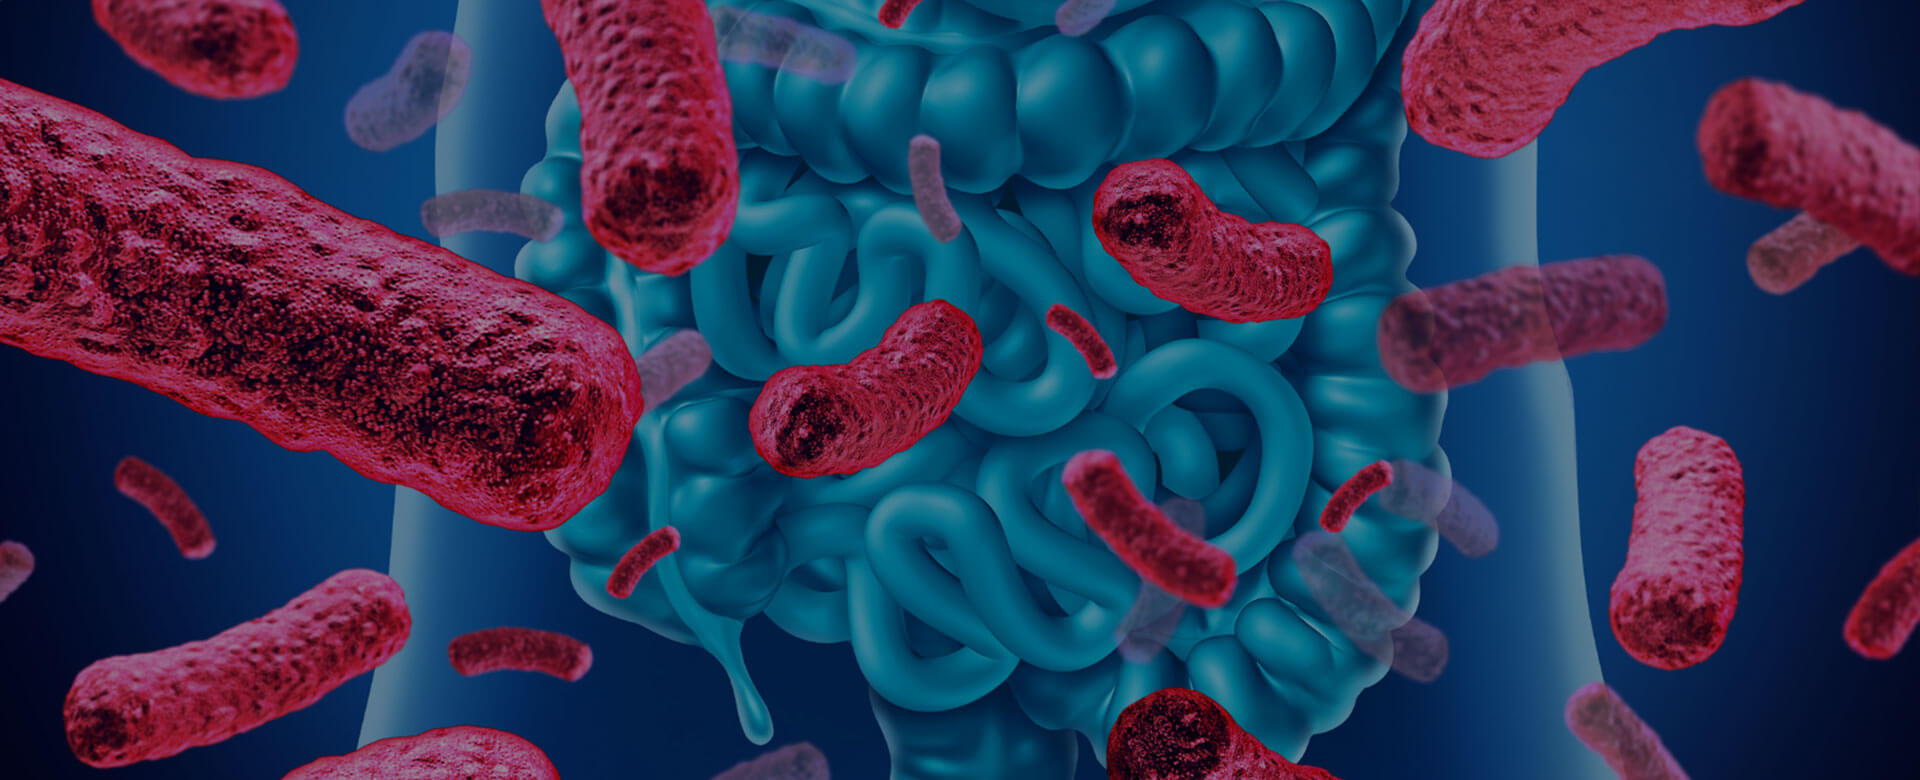 How gut bacteria kill colon cancer cells